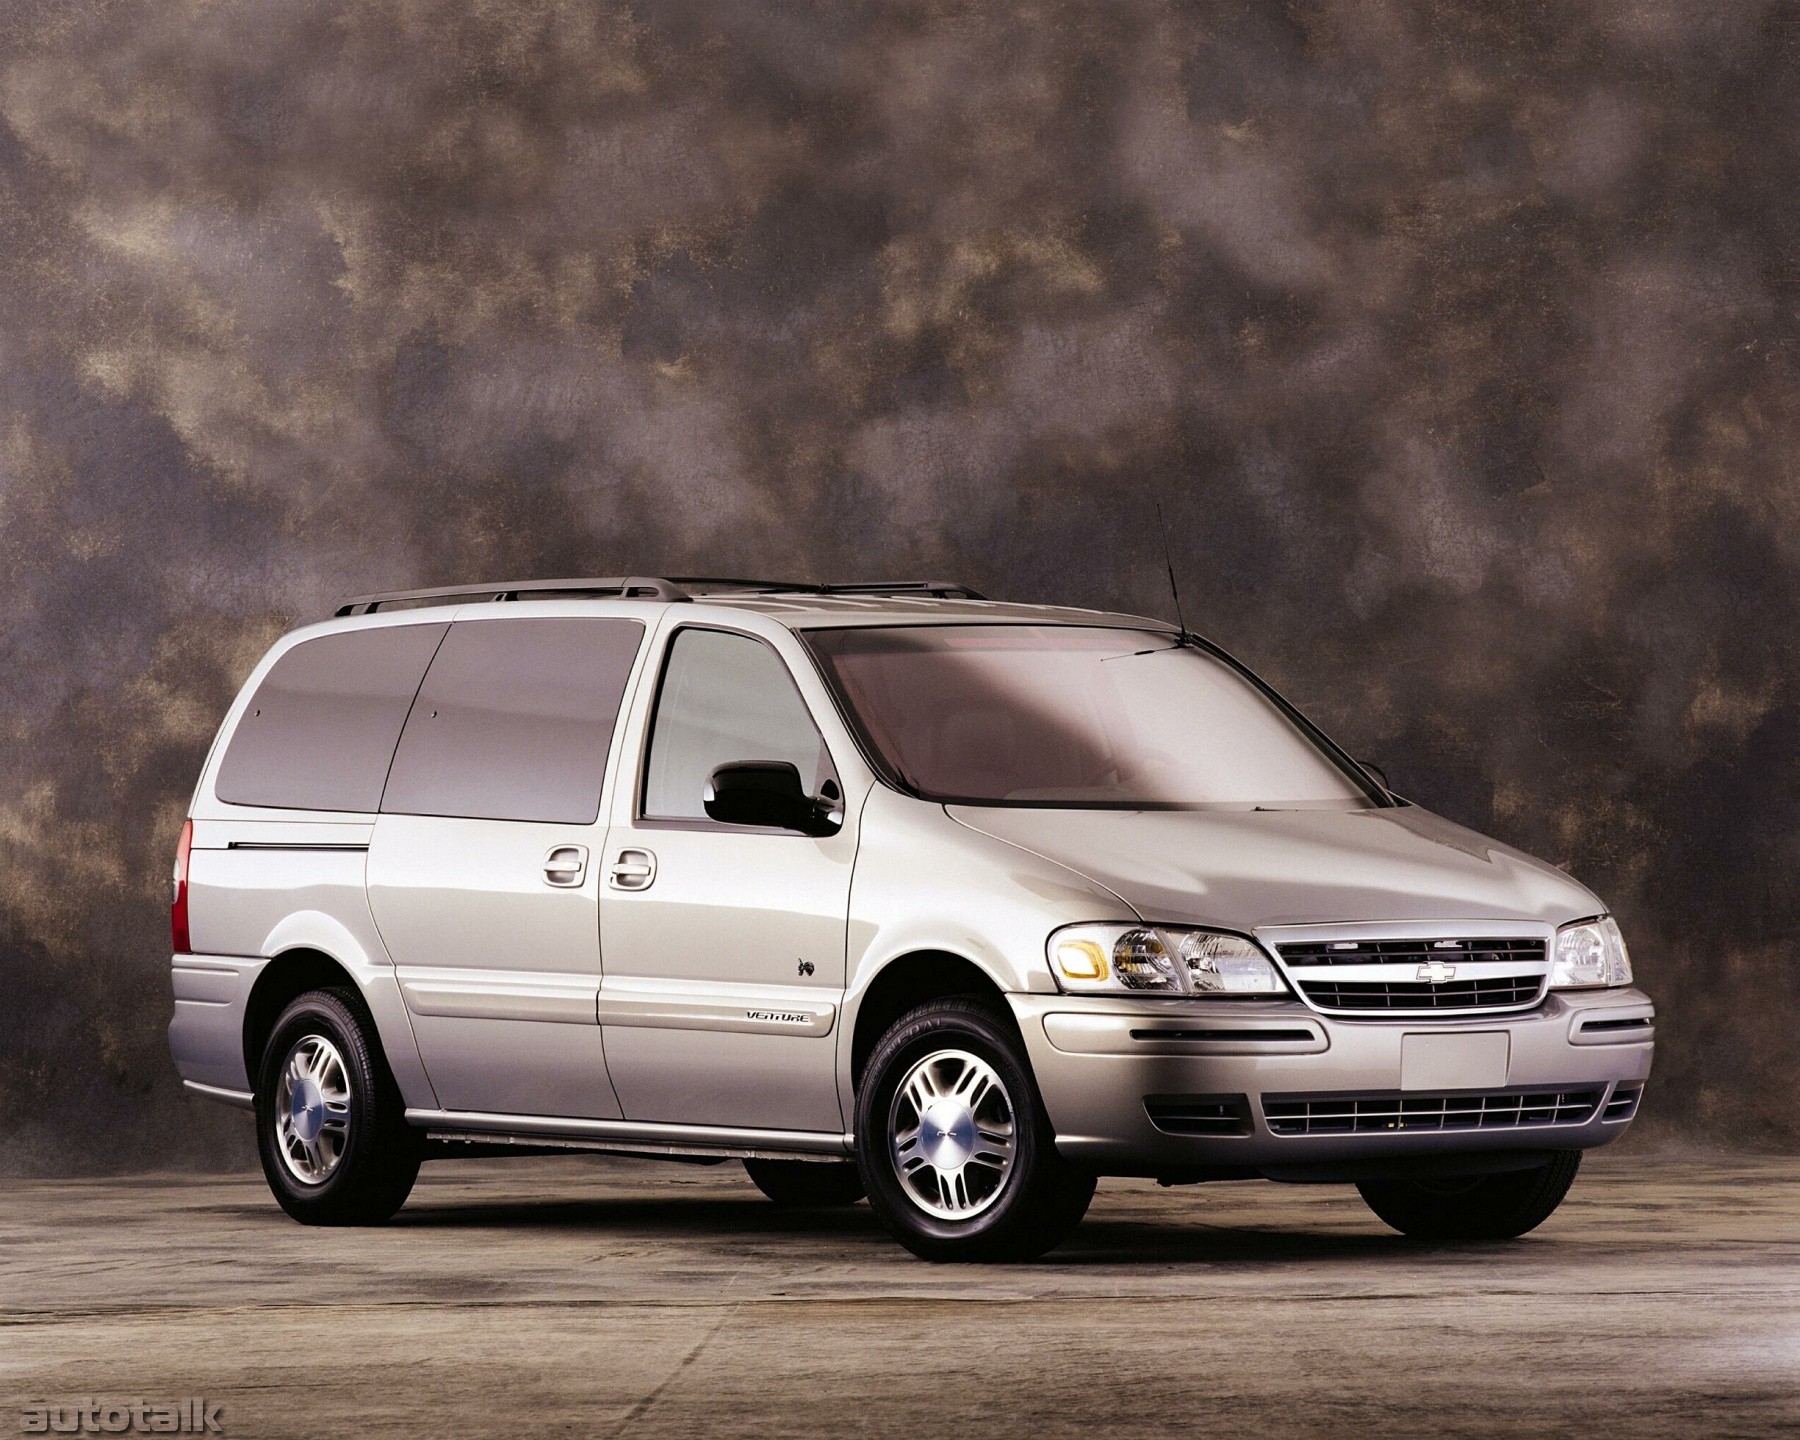 Караван аналоги. 2001 Chevrolet Venture. Chevrolet Venture 1997. Chevrolet Venture 2005. Chevrolet Venture 2002.